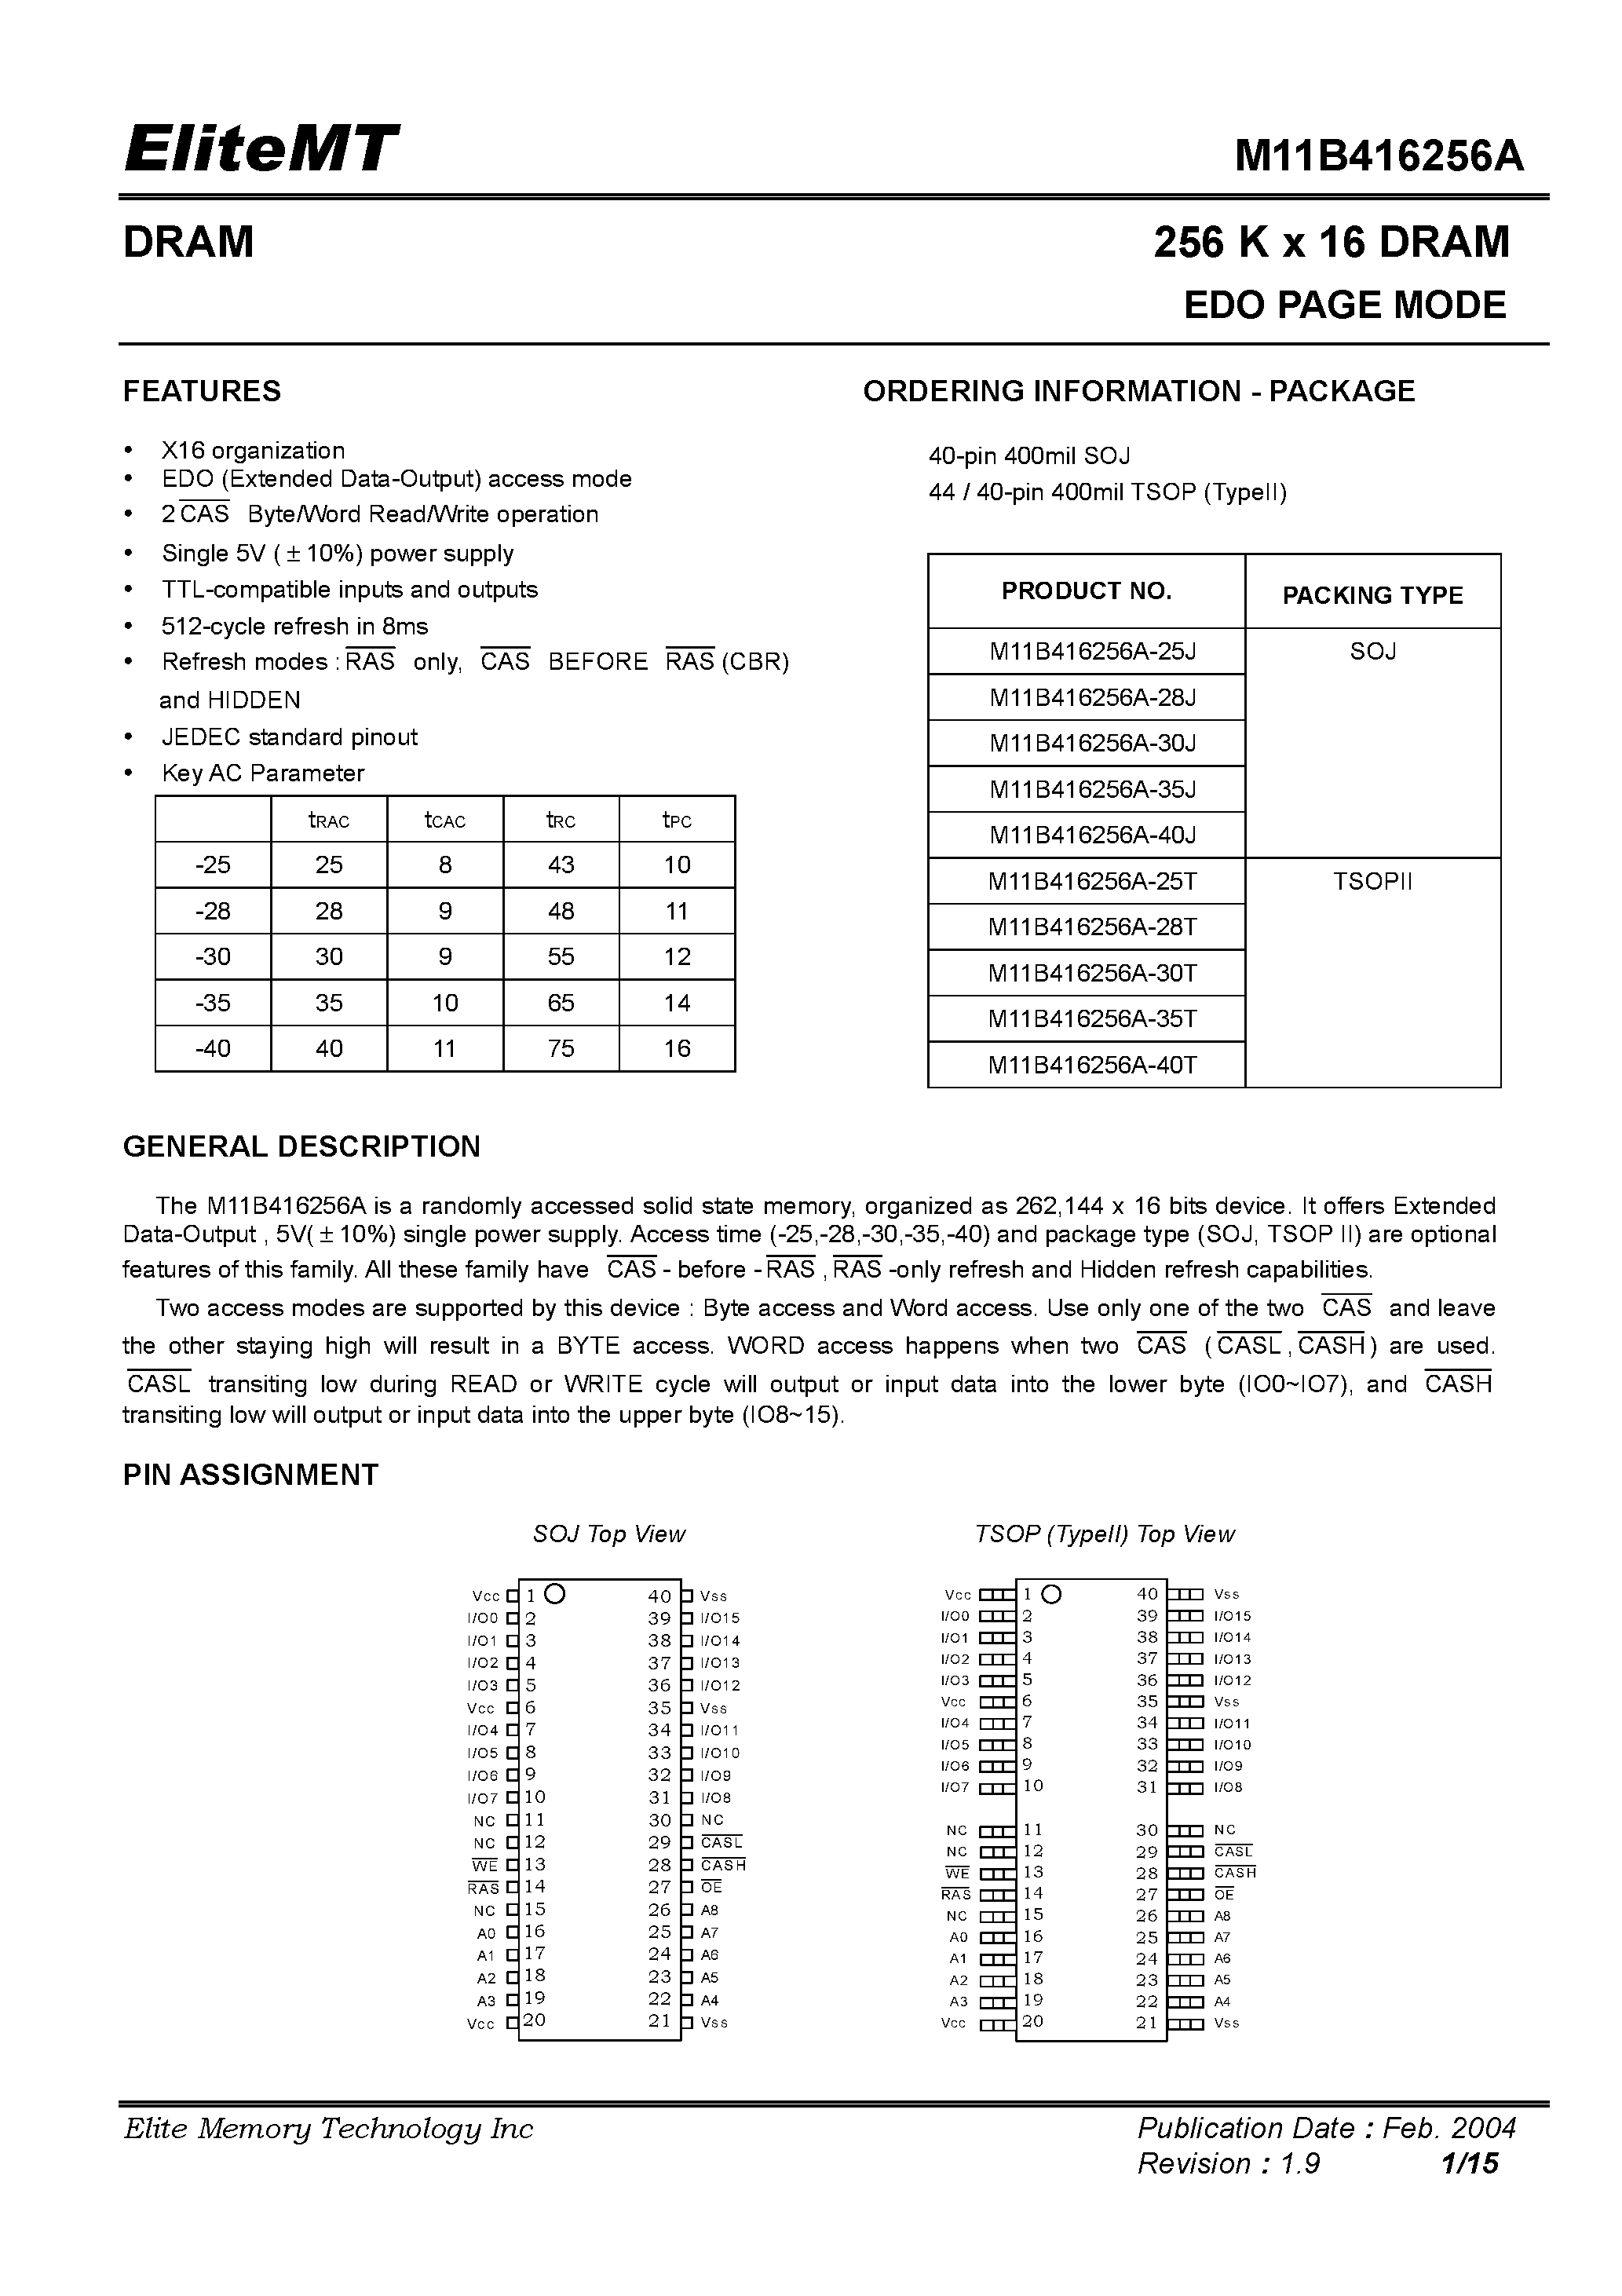 Datasheet M11B416256A-28J - 256 K x 16 DRAM EDO PAGE MODE page 1